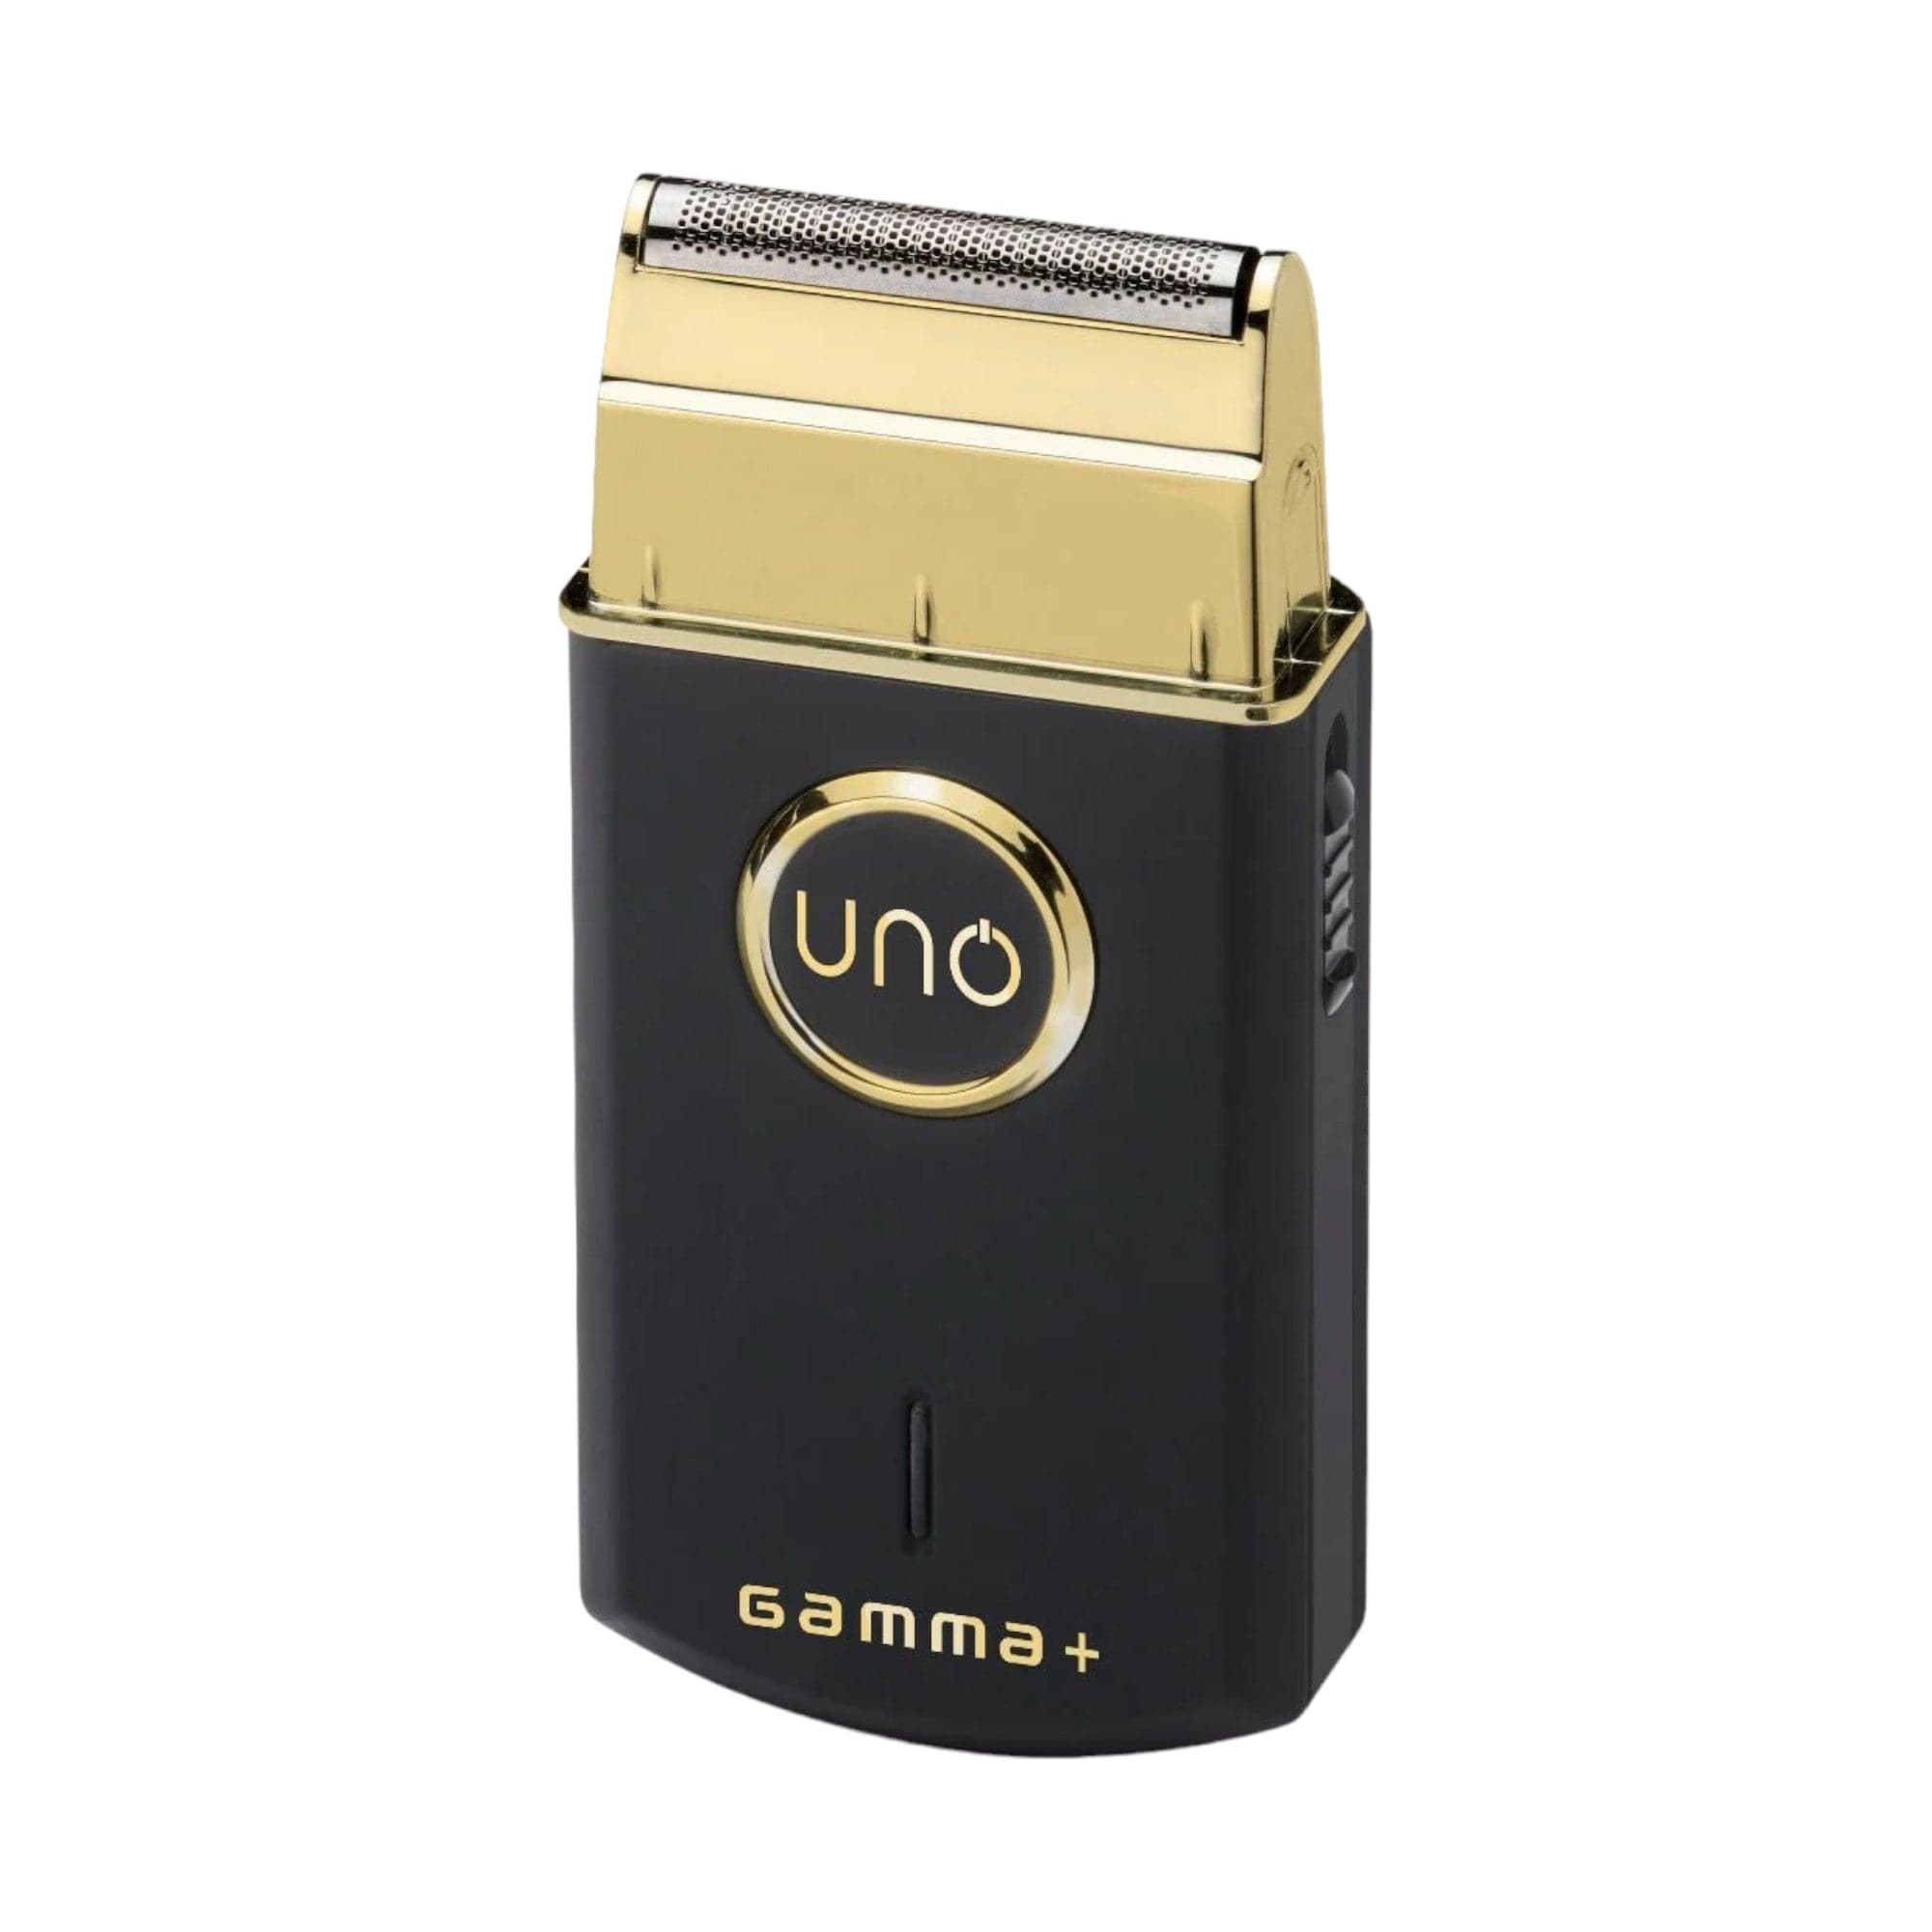 Gamma+ - Uno Professional Mobile Single Foil Shaver